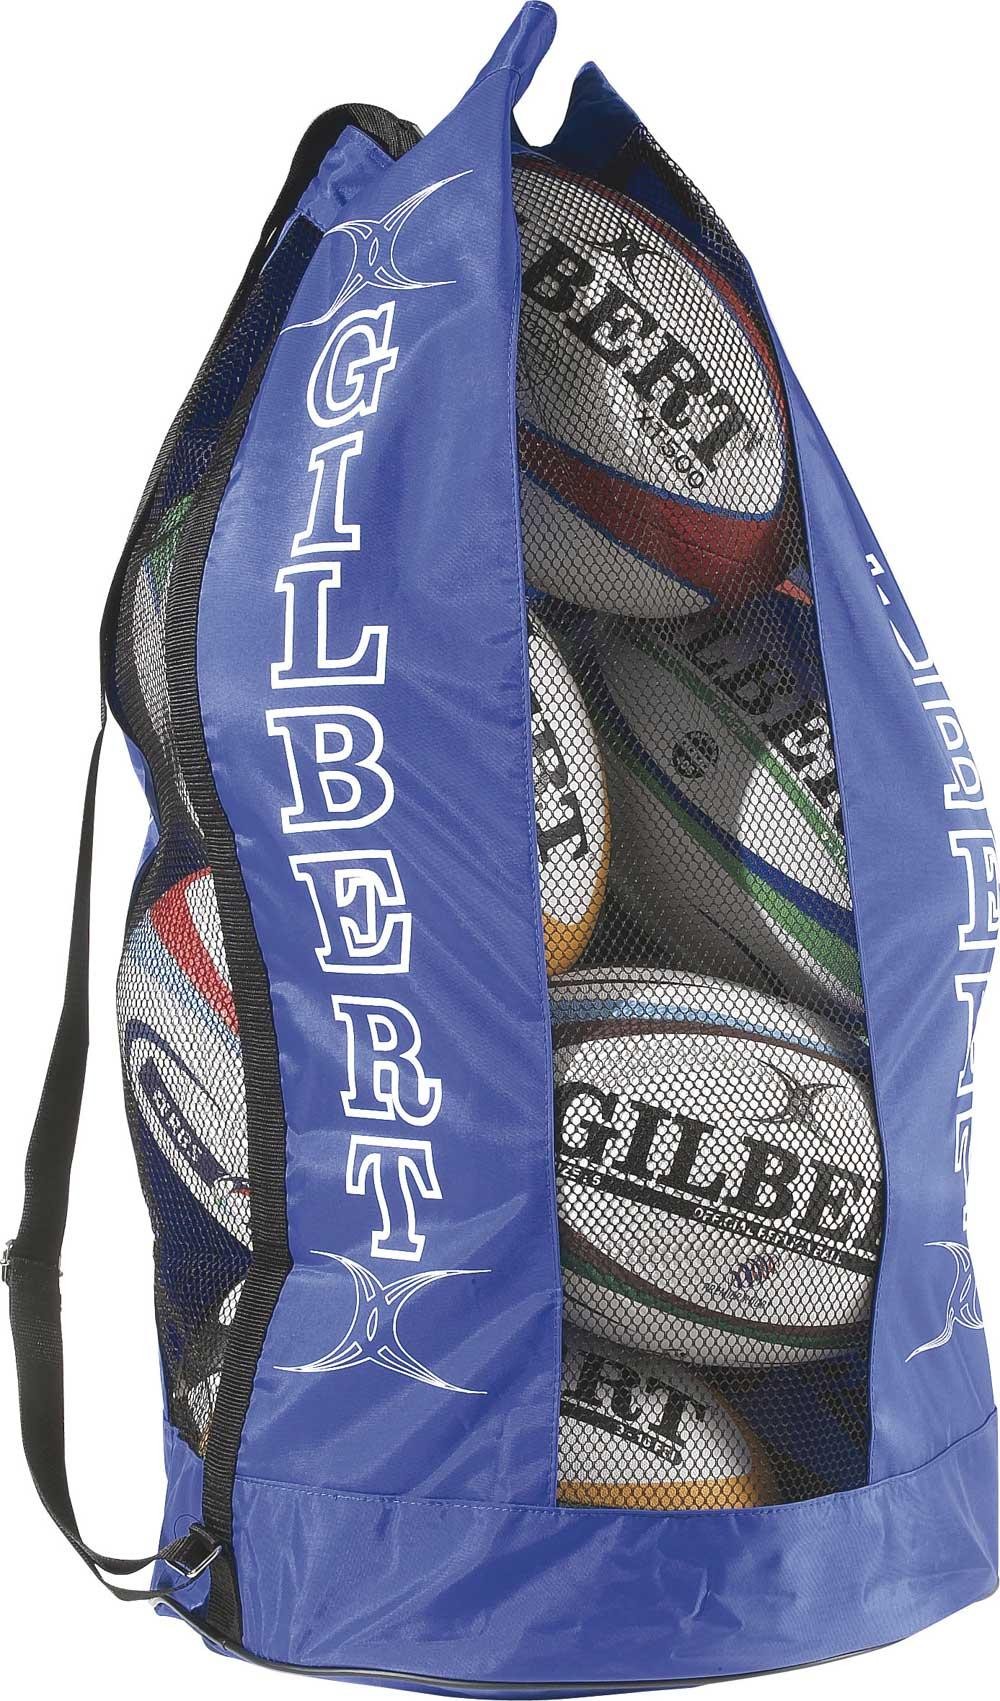 gilbert-breathable-ball-bag-royal_1.jpg